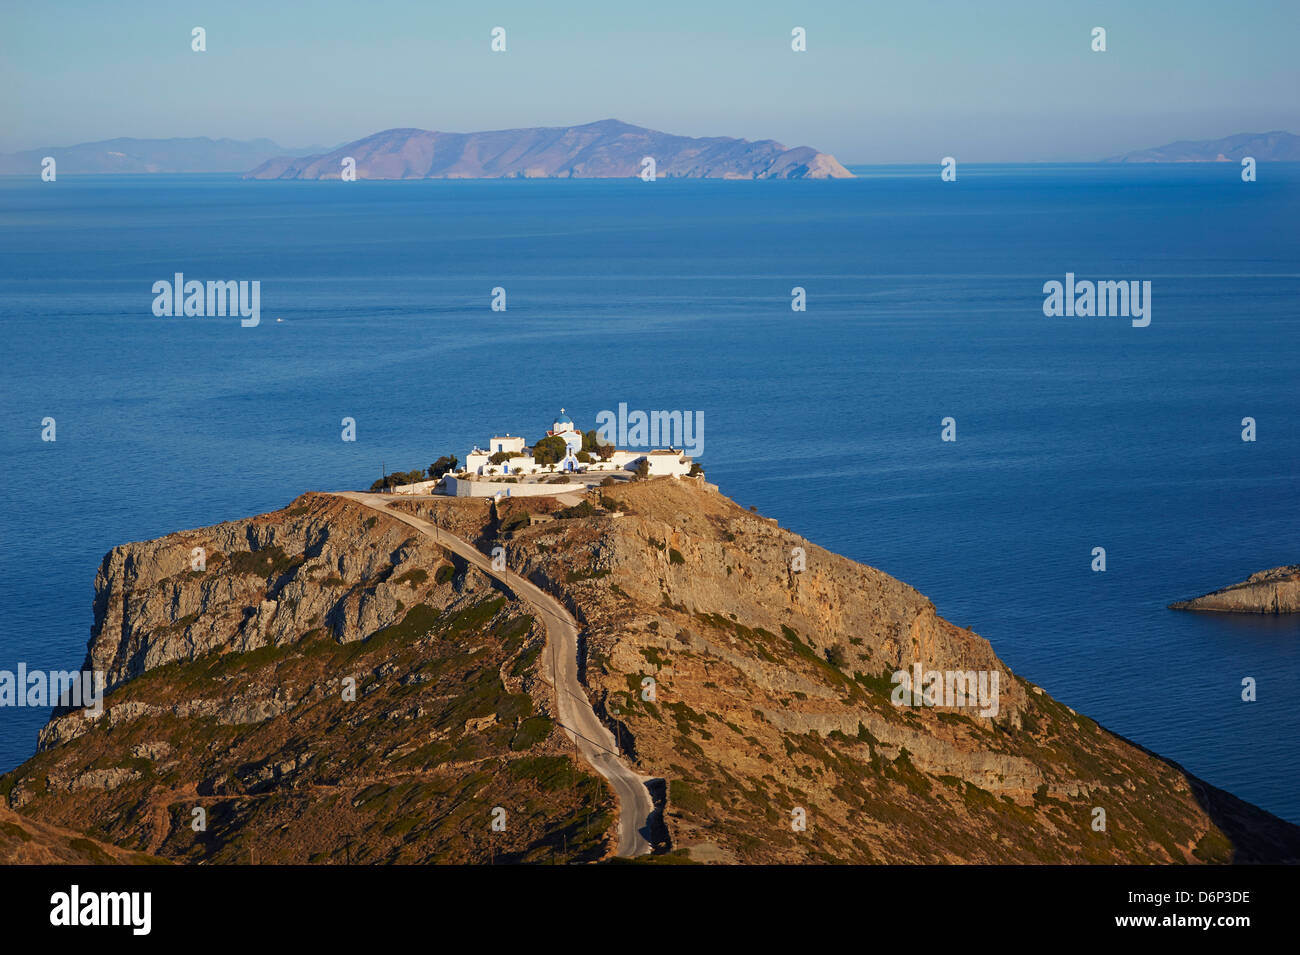 Monastère Agios Sostis, Kea Island, Cyclades, îles grecques, Grèce, Europe Banque D'Images